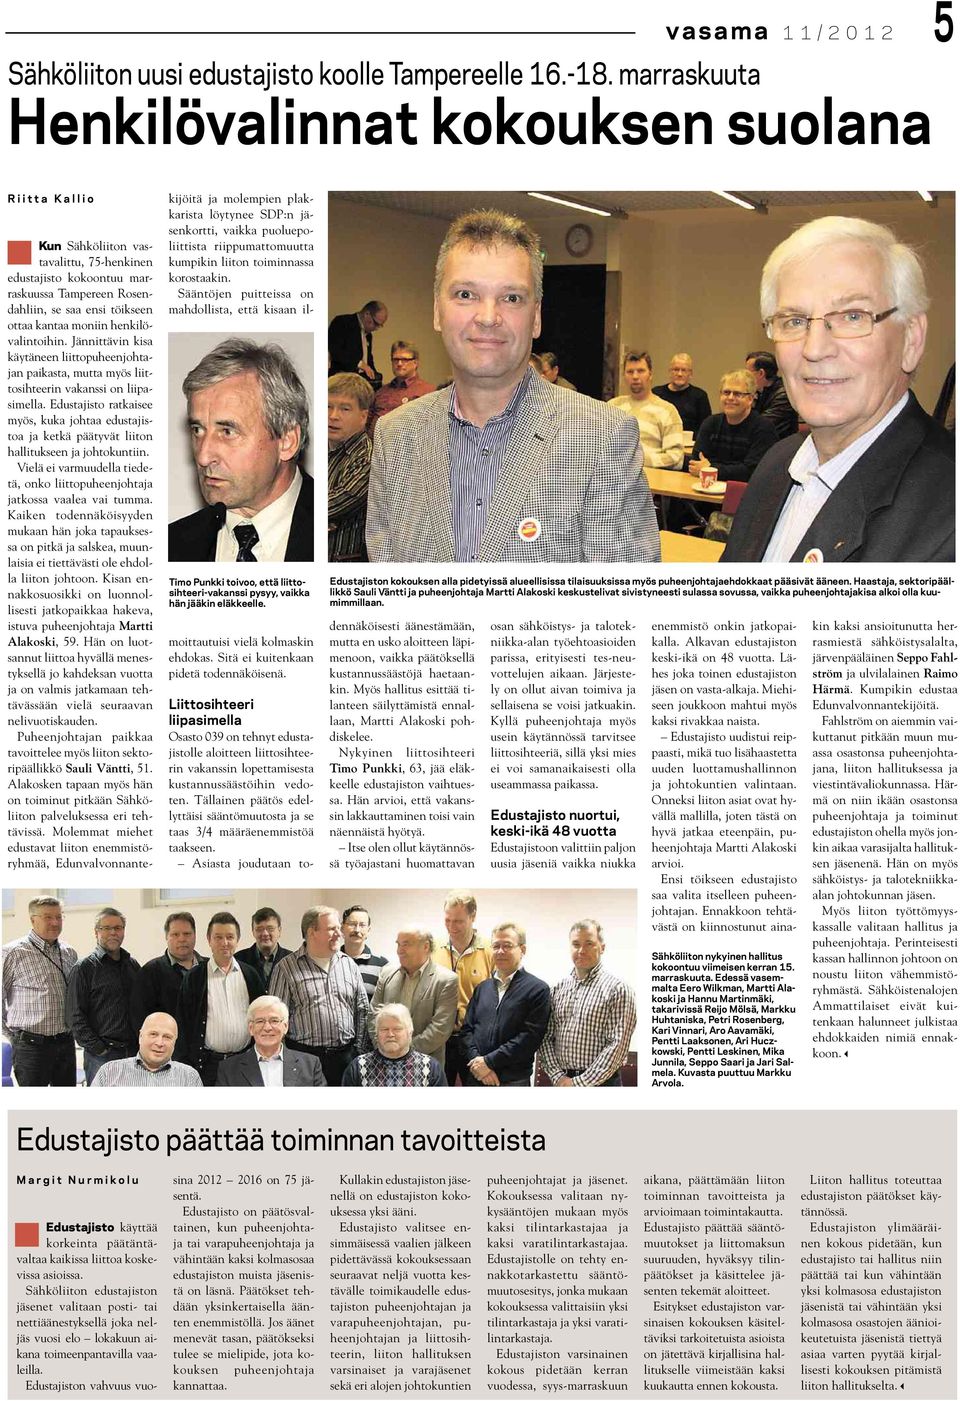 Kun Sähköliiton vastavalittu, 75-henkinen edustajisto kokoontuu marraskuussa Tampereen Rosendahliin, se saa ensi töikseen ottaa kantaa moniin henkilövalintoihin.